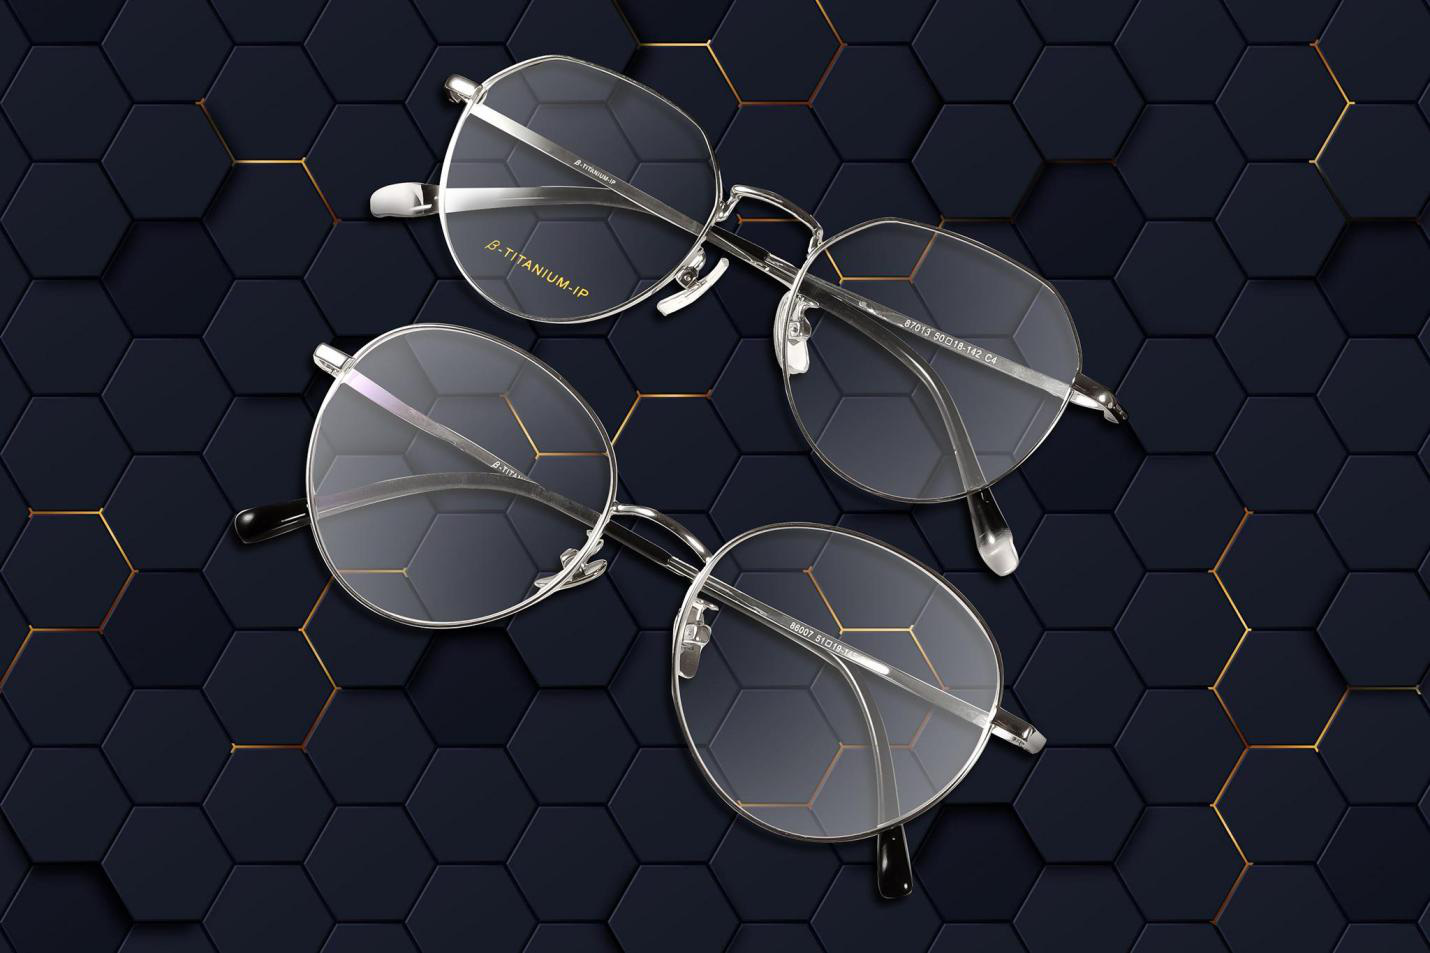 EyePlus gợi ý 3 phiên bản gọng kính titan sẽ trở thành xu hướng trong năm 2021 - Ảnh 2.